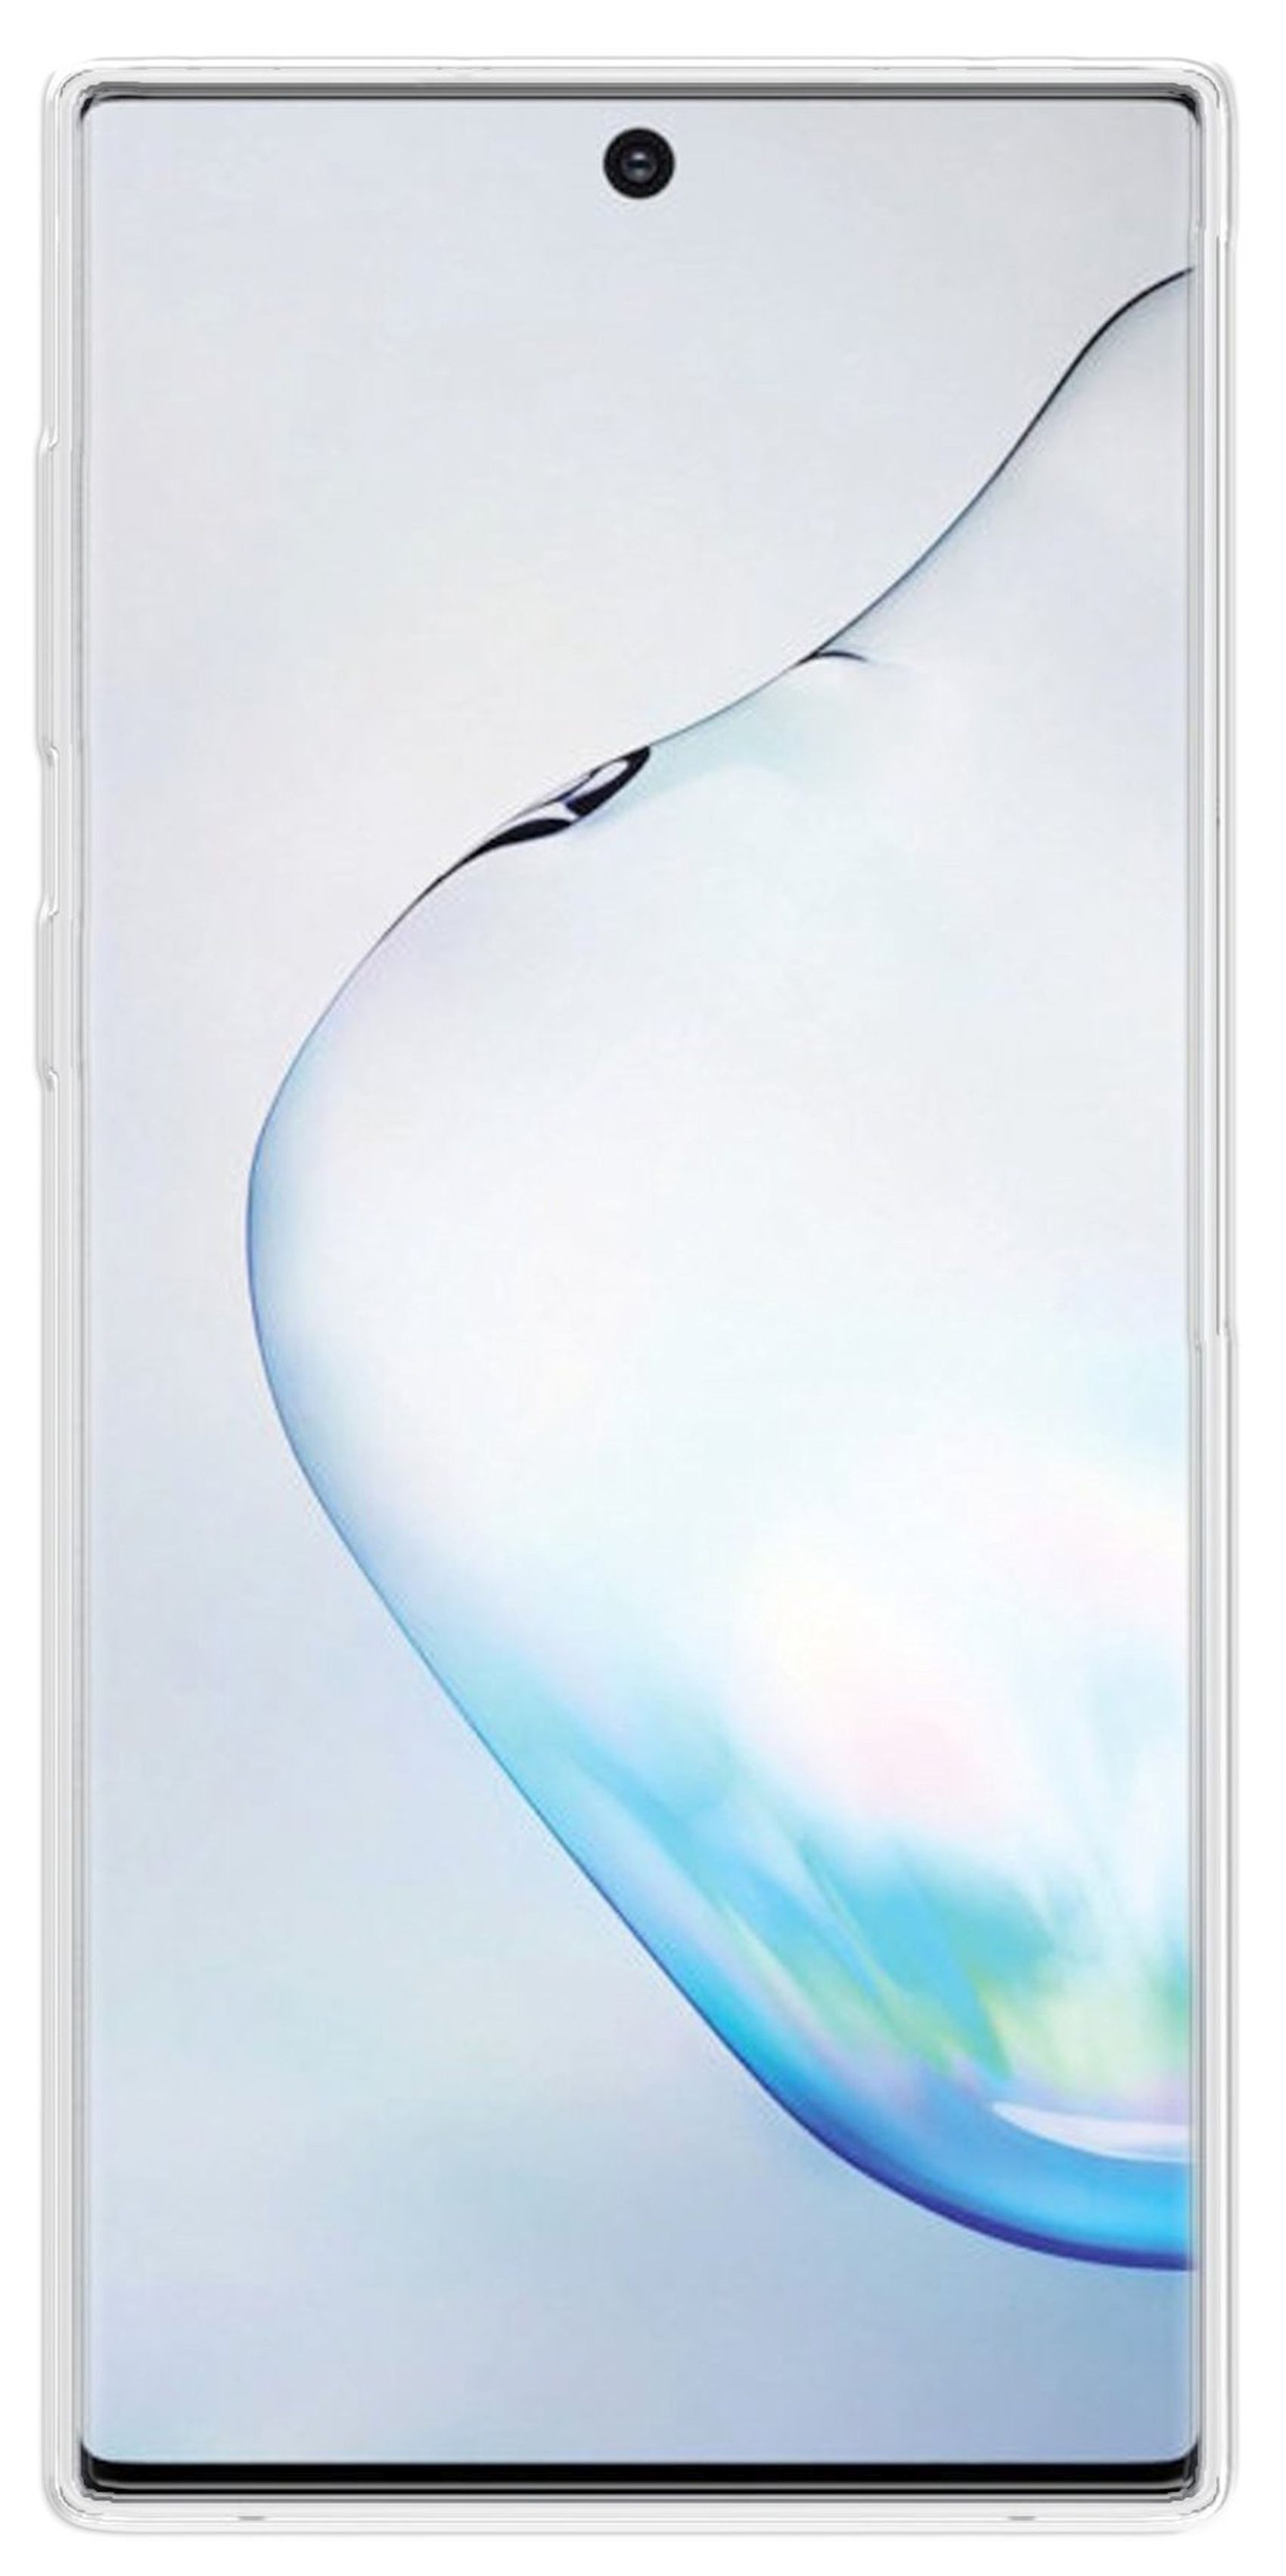 Note Bumper, 10, Case, Galaxy COFI Transparent Basic Samsung,